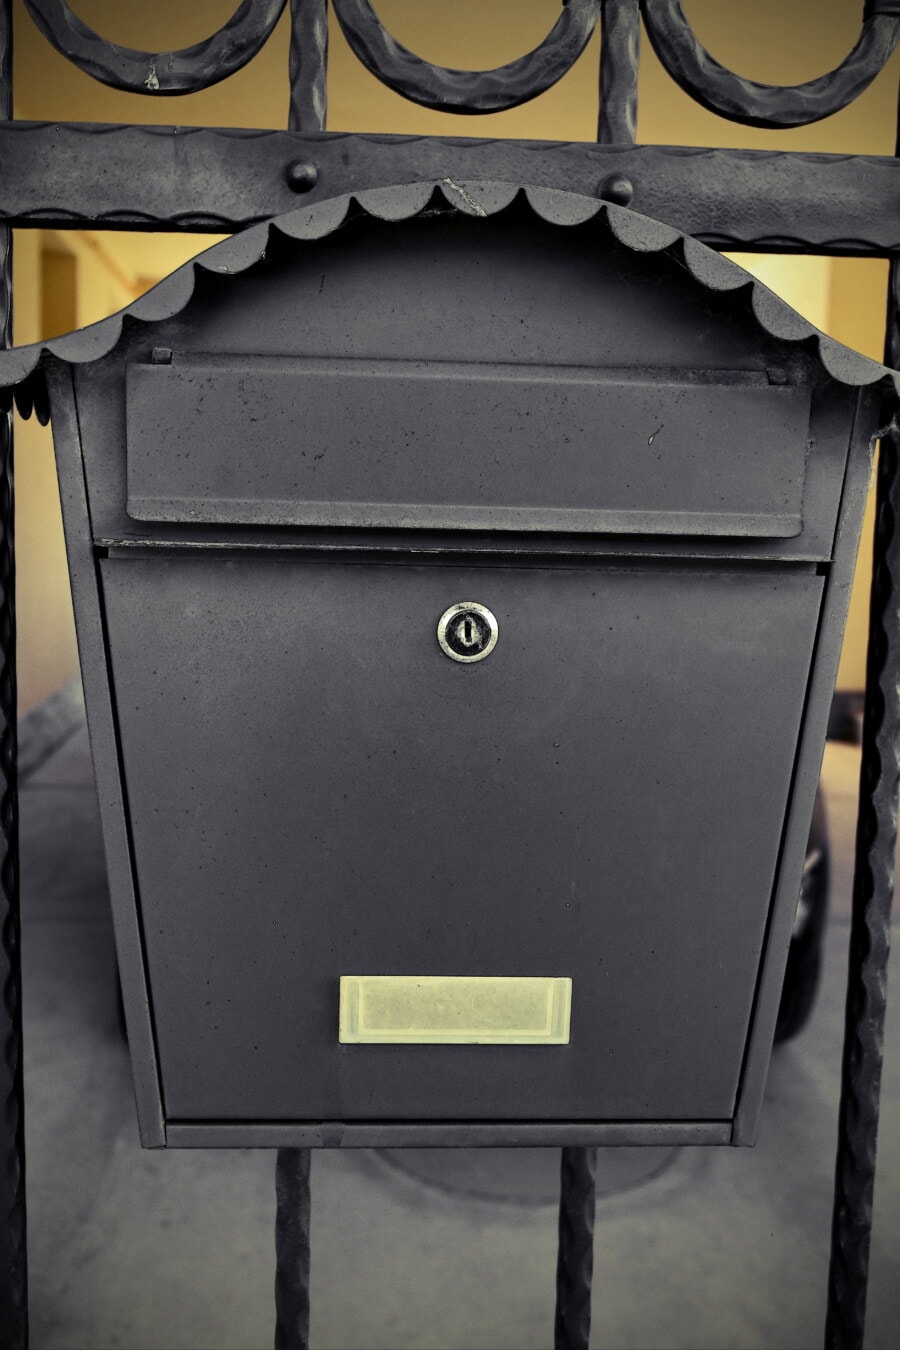 邮箱, 邮件插槽, 装饰, 黑, 铸铁, 手工, 孔, 钢, 铁, 行业